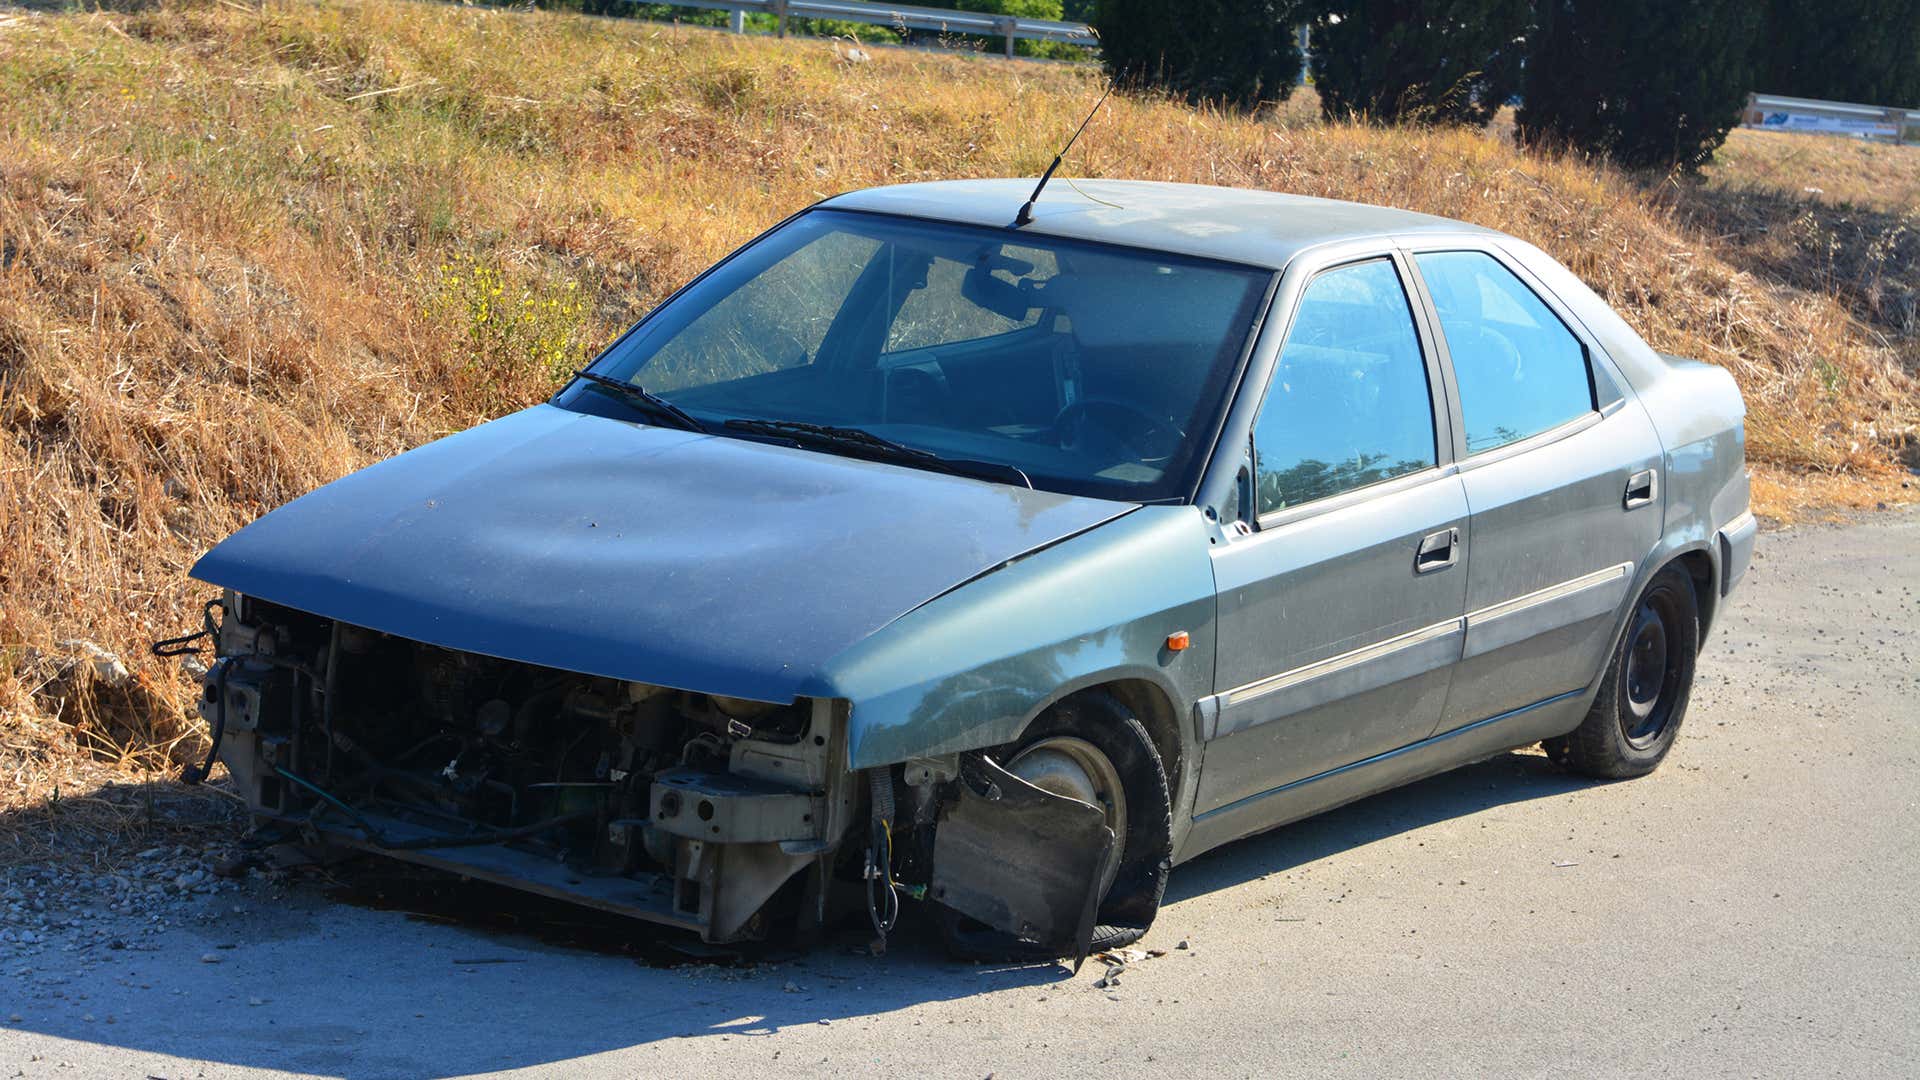 一个没有前端的被破坏的汽车坐在路边。